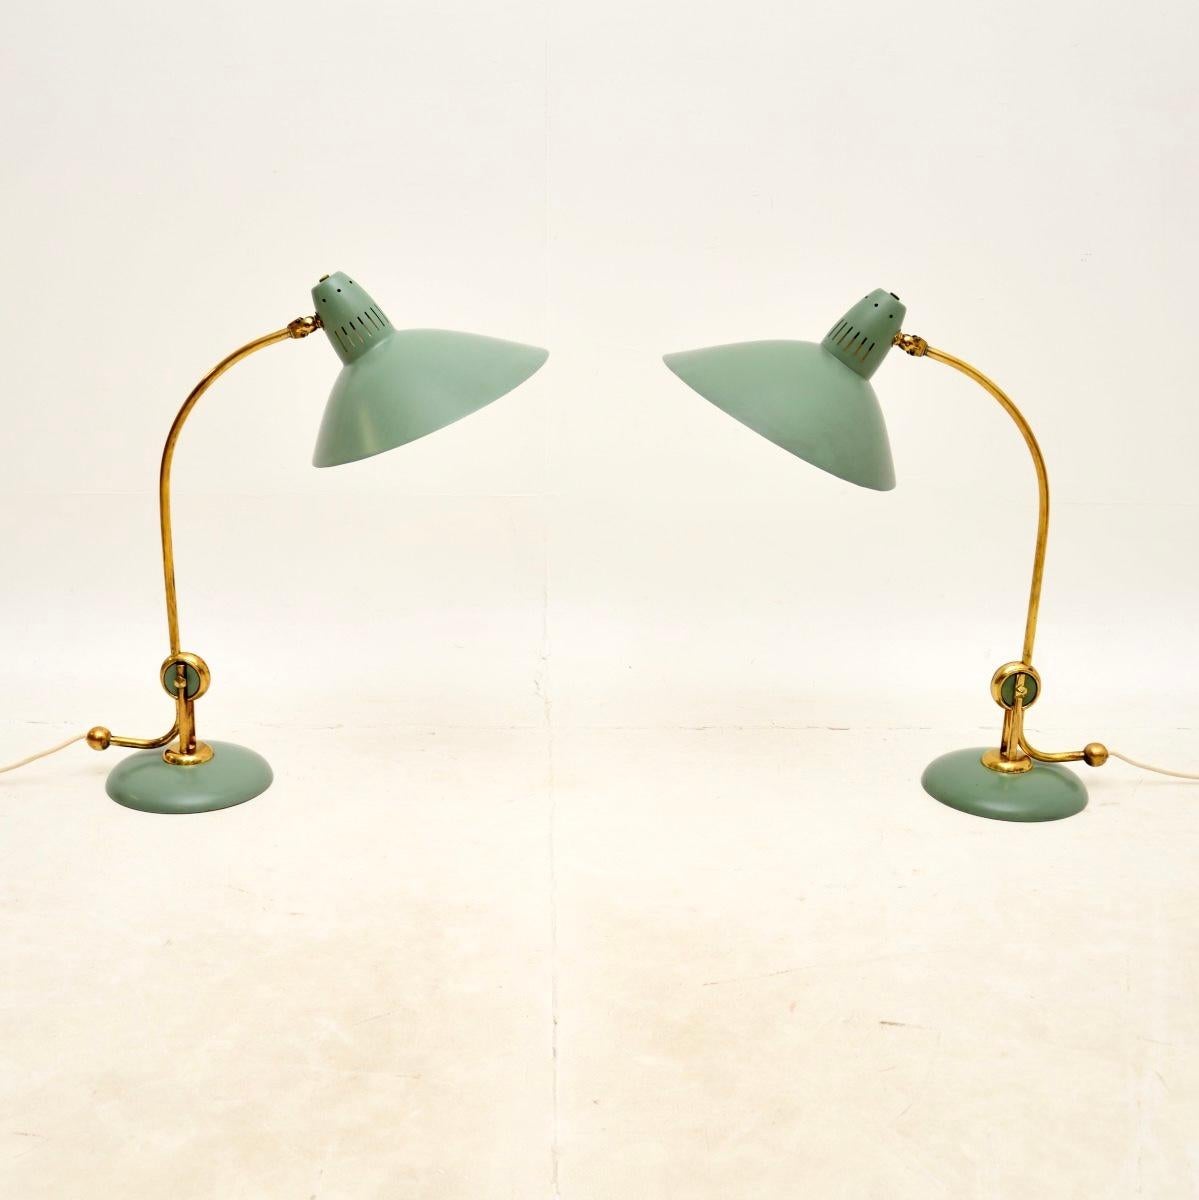 Une superbe paire de lampes de table vintage de Hala Zeist, fabriquées en Allemagne et datant des années 1950.

La qualité est superbe et leur design est incroyablement élégant. Elles sont fabriquées en laiton et en métal vert menthe. Les abat-jour